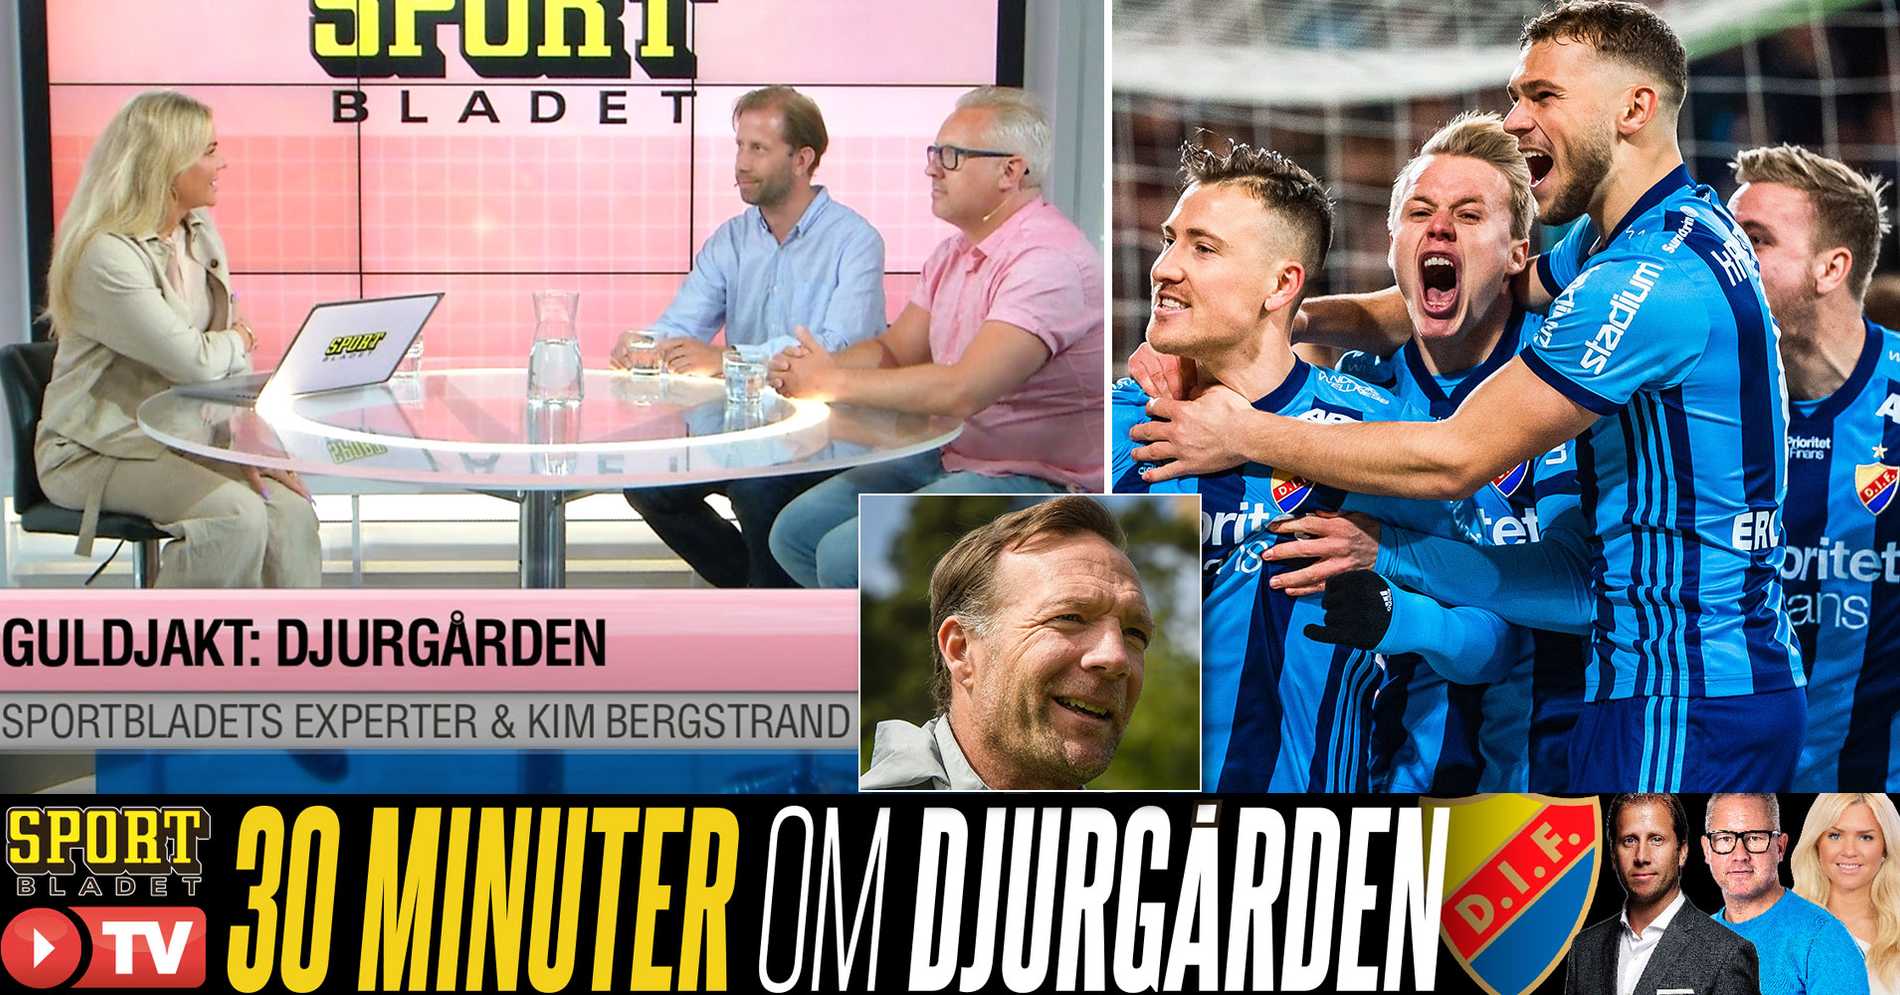 Djurgården Fotboll: TV: 30 minuter – bara om Djurgårdens IF: ”Jättespännande”